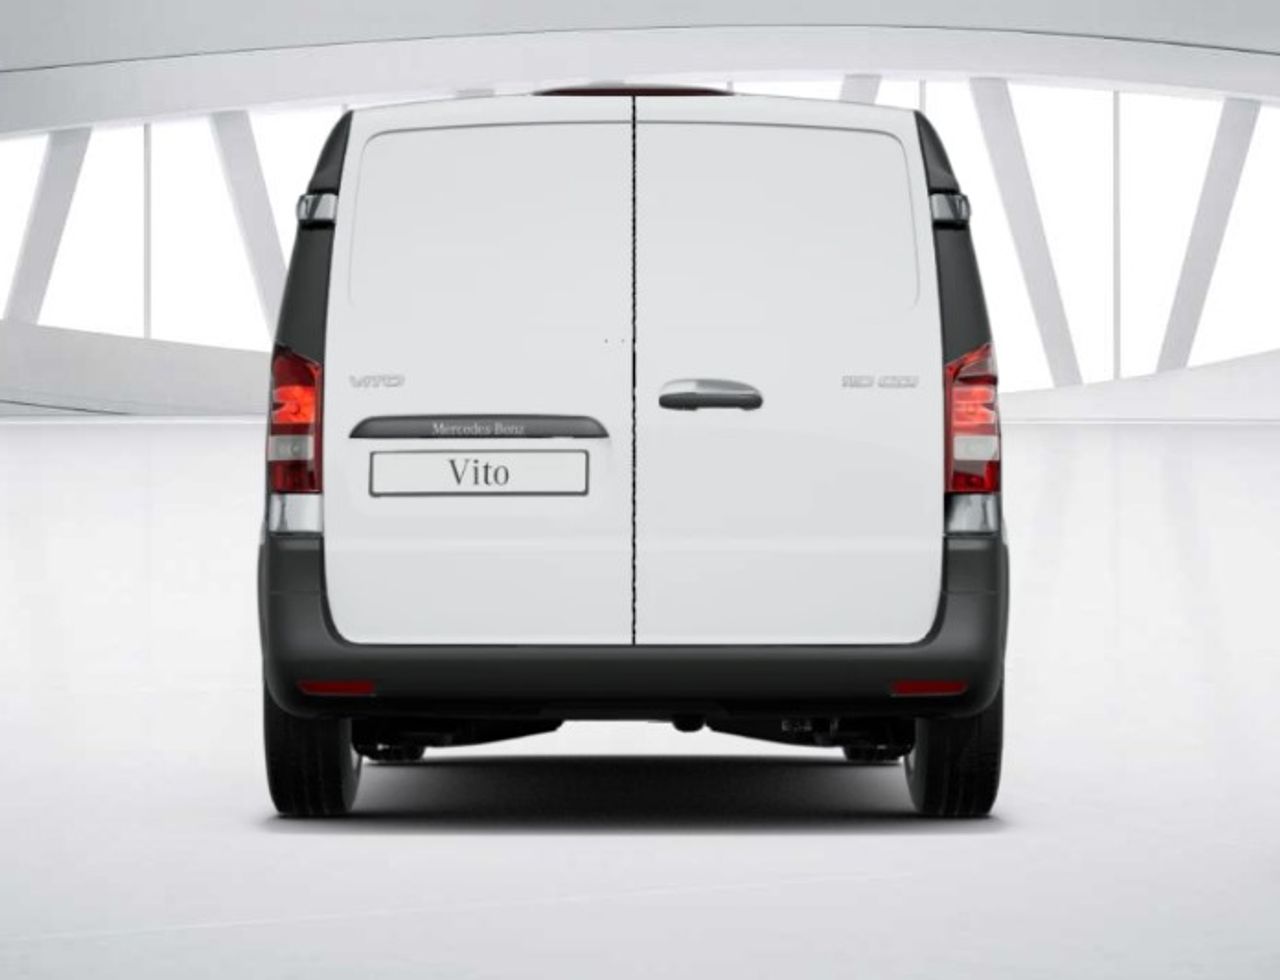 mercedes-vito-nuevo-vito-110-cdi-furgon-base-compacta-imagen-5